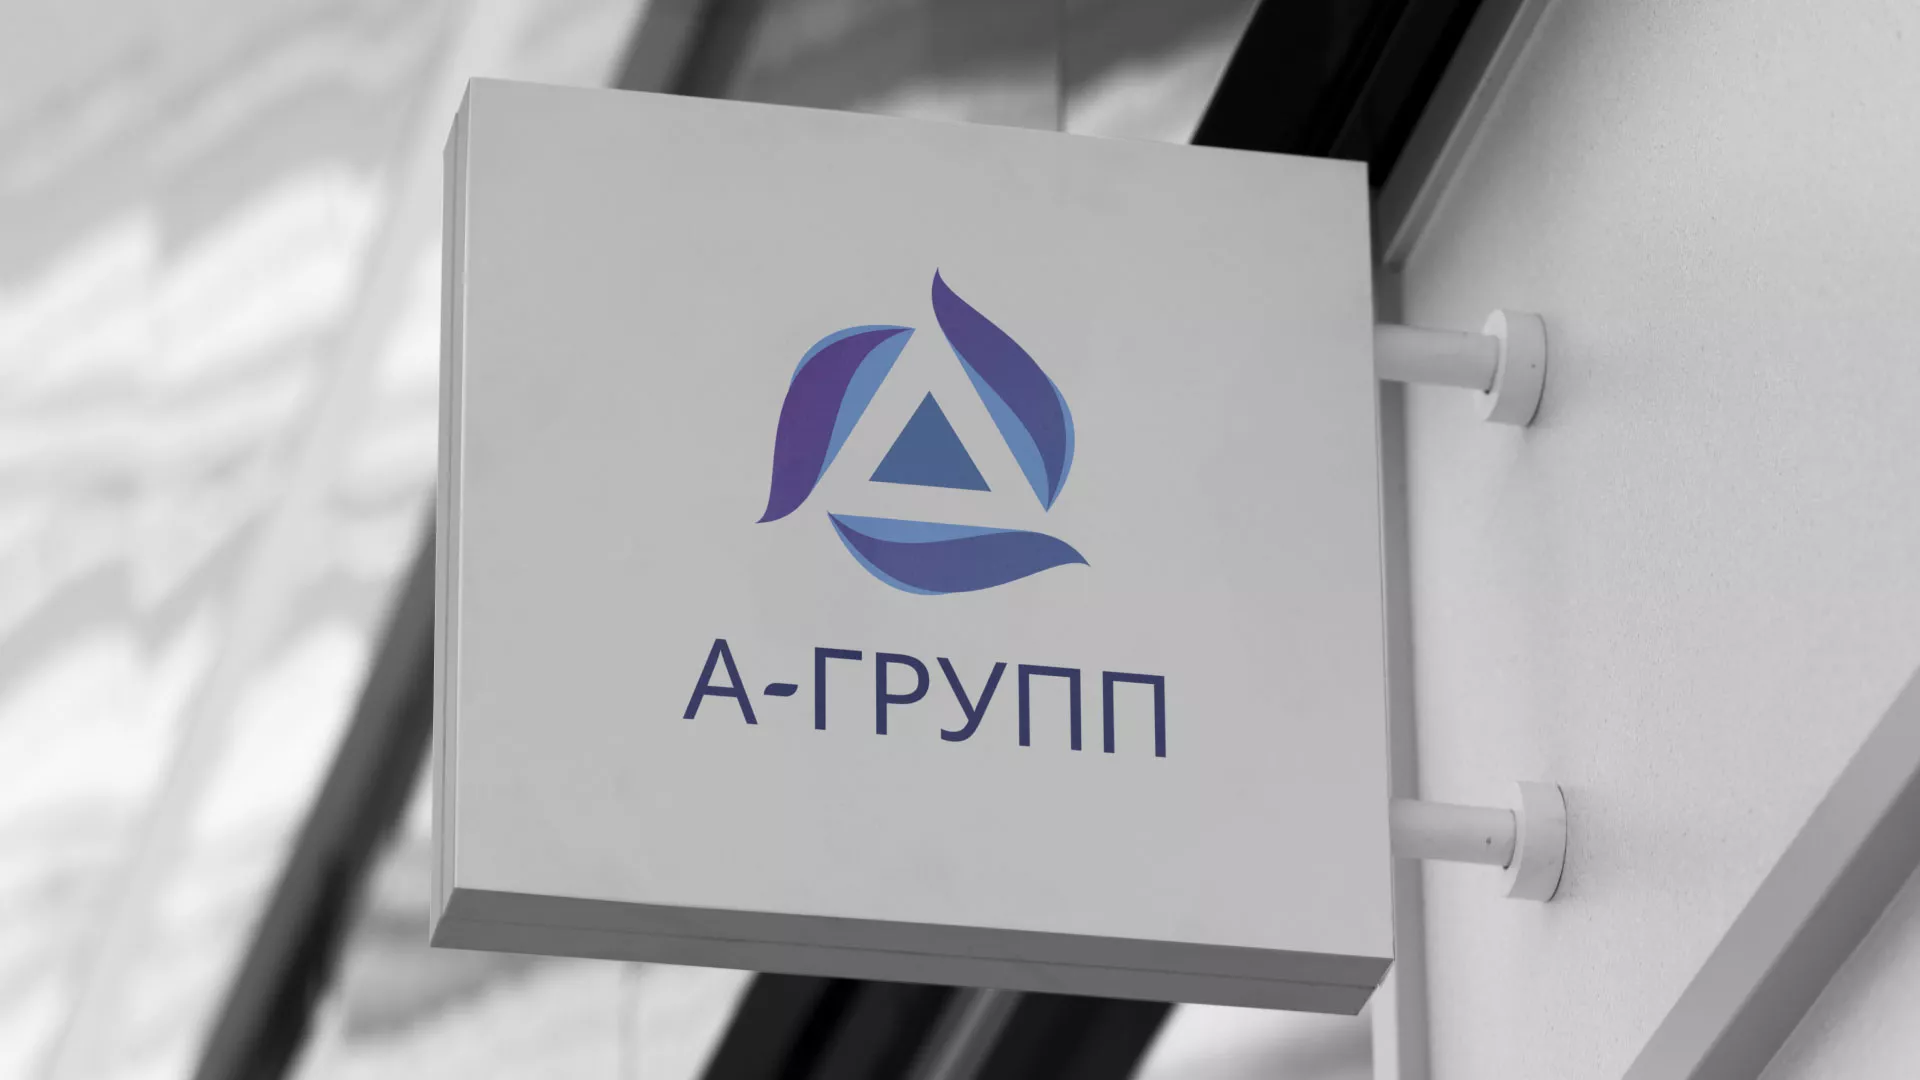 Создание логотипа компании «А-ГРУПП» в Архангельске